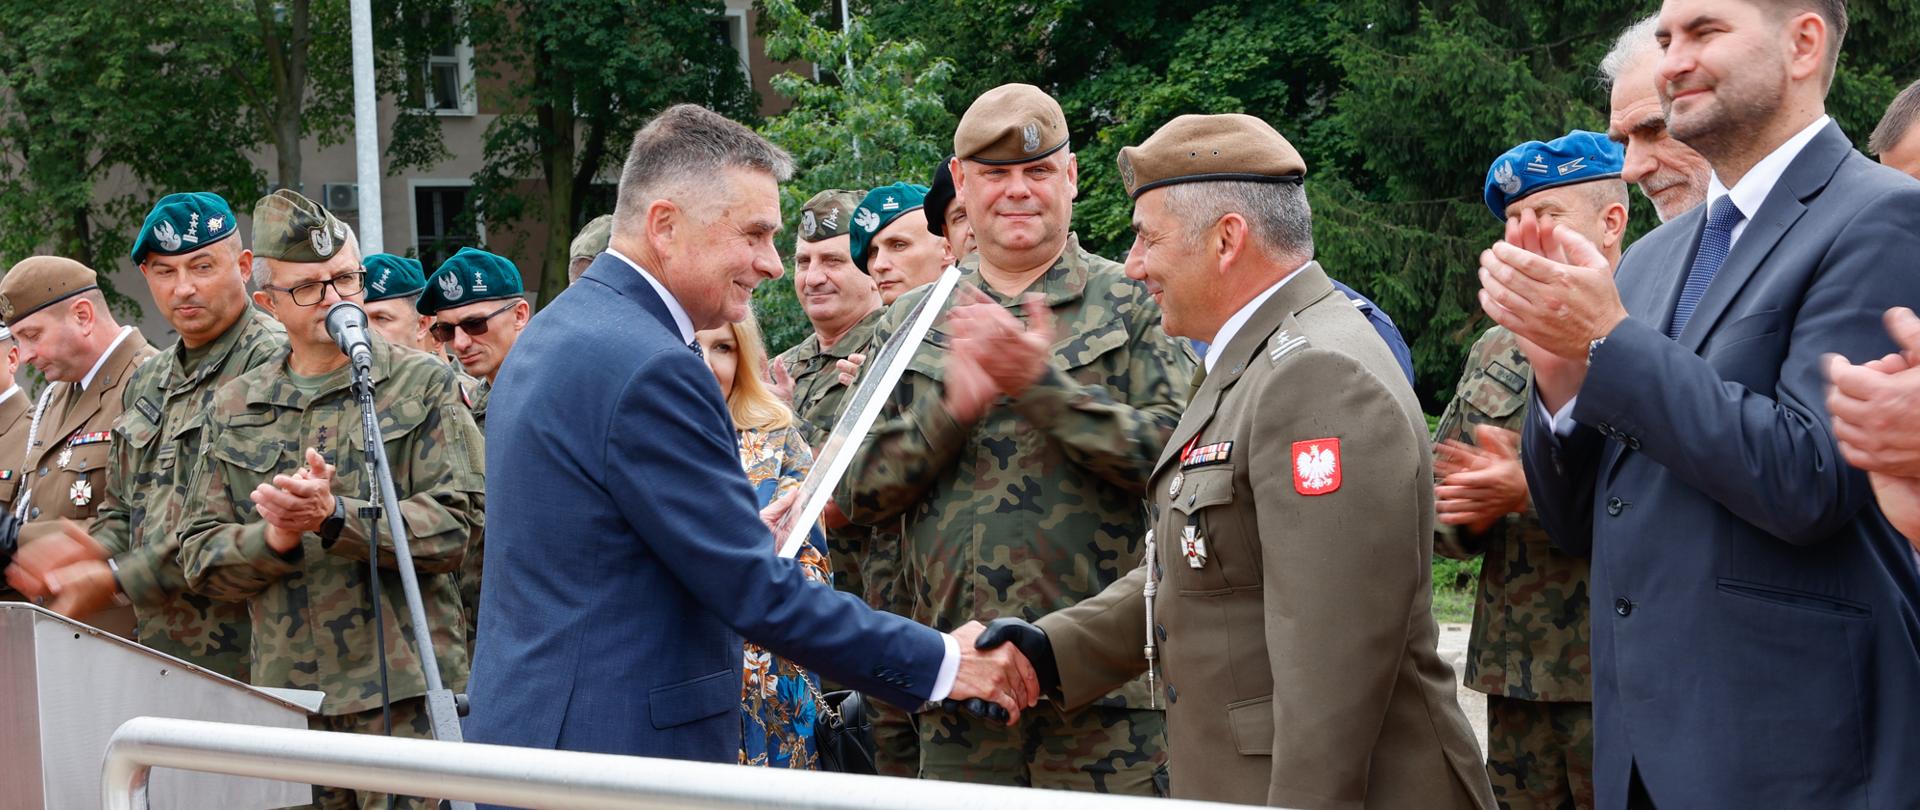 Wojewoda lubelski Lech Sprawka wręcza dyplom zastępcy dowódcy 2 Lubelskiej Brygady Obrony Terytorialnej.